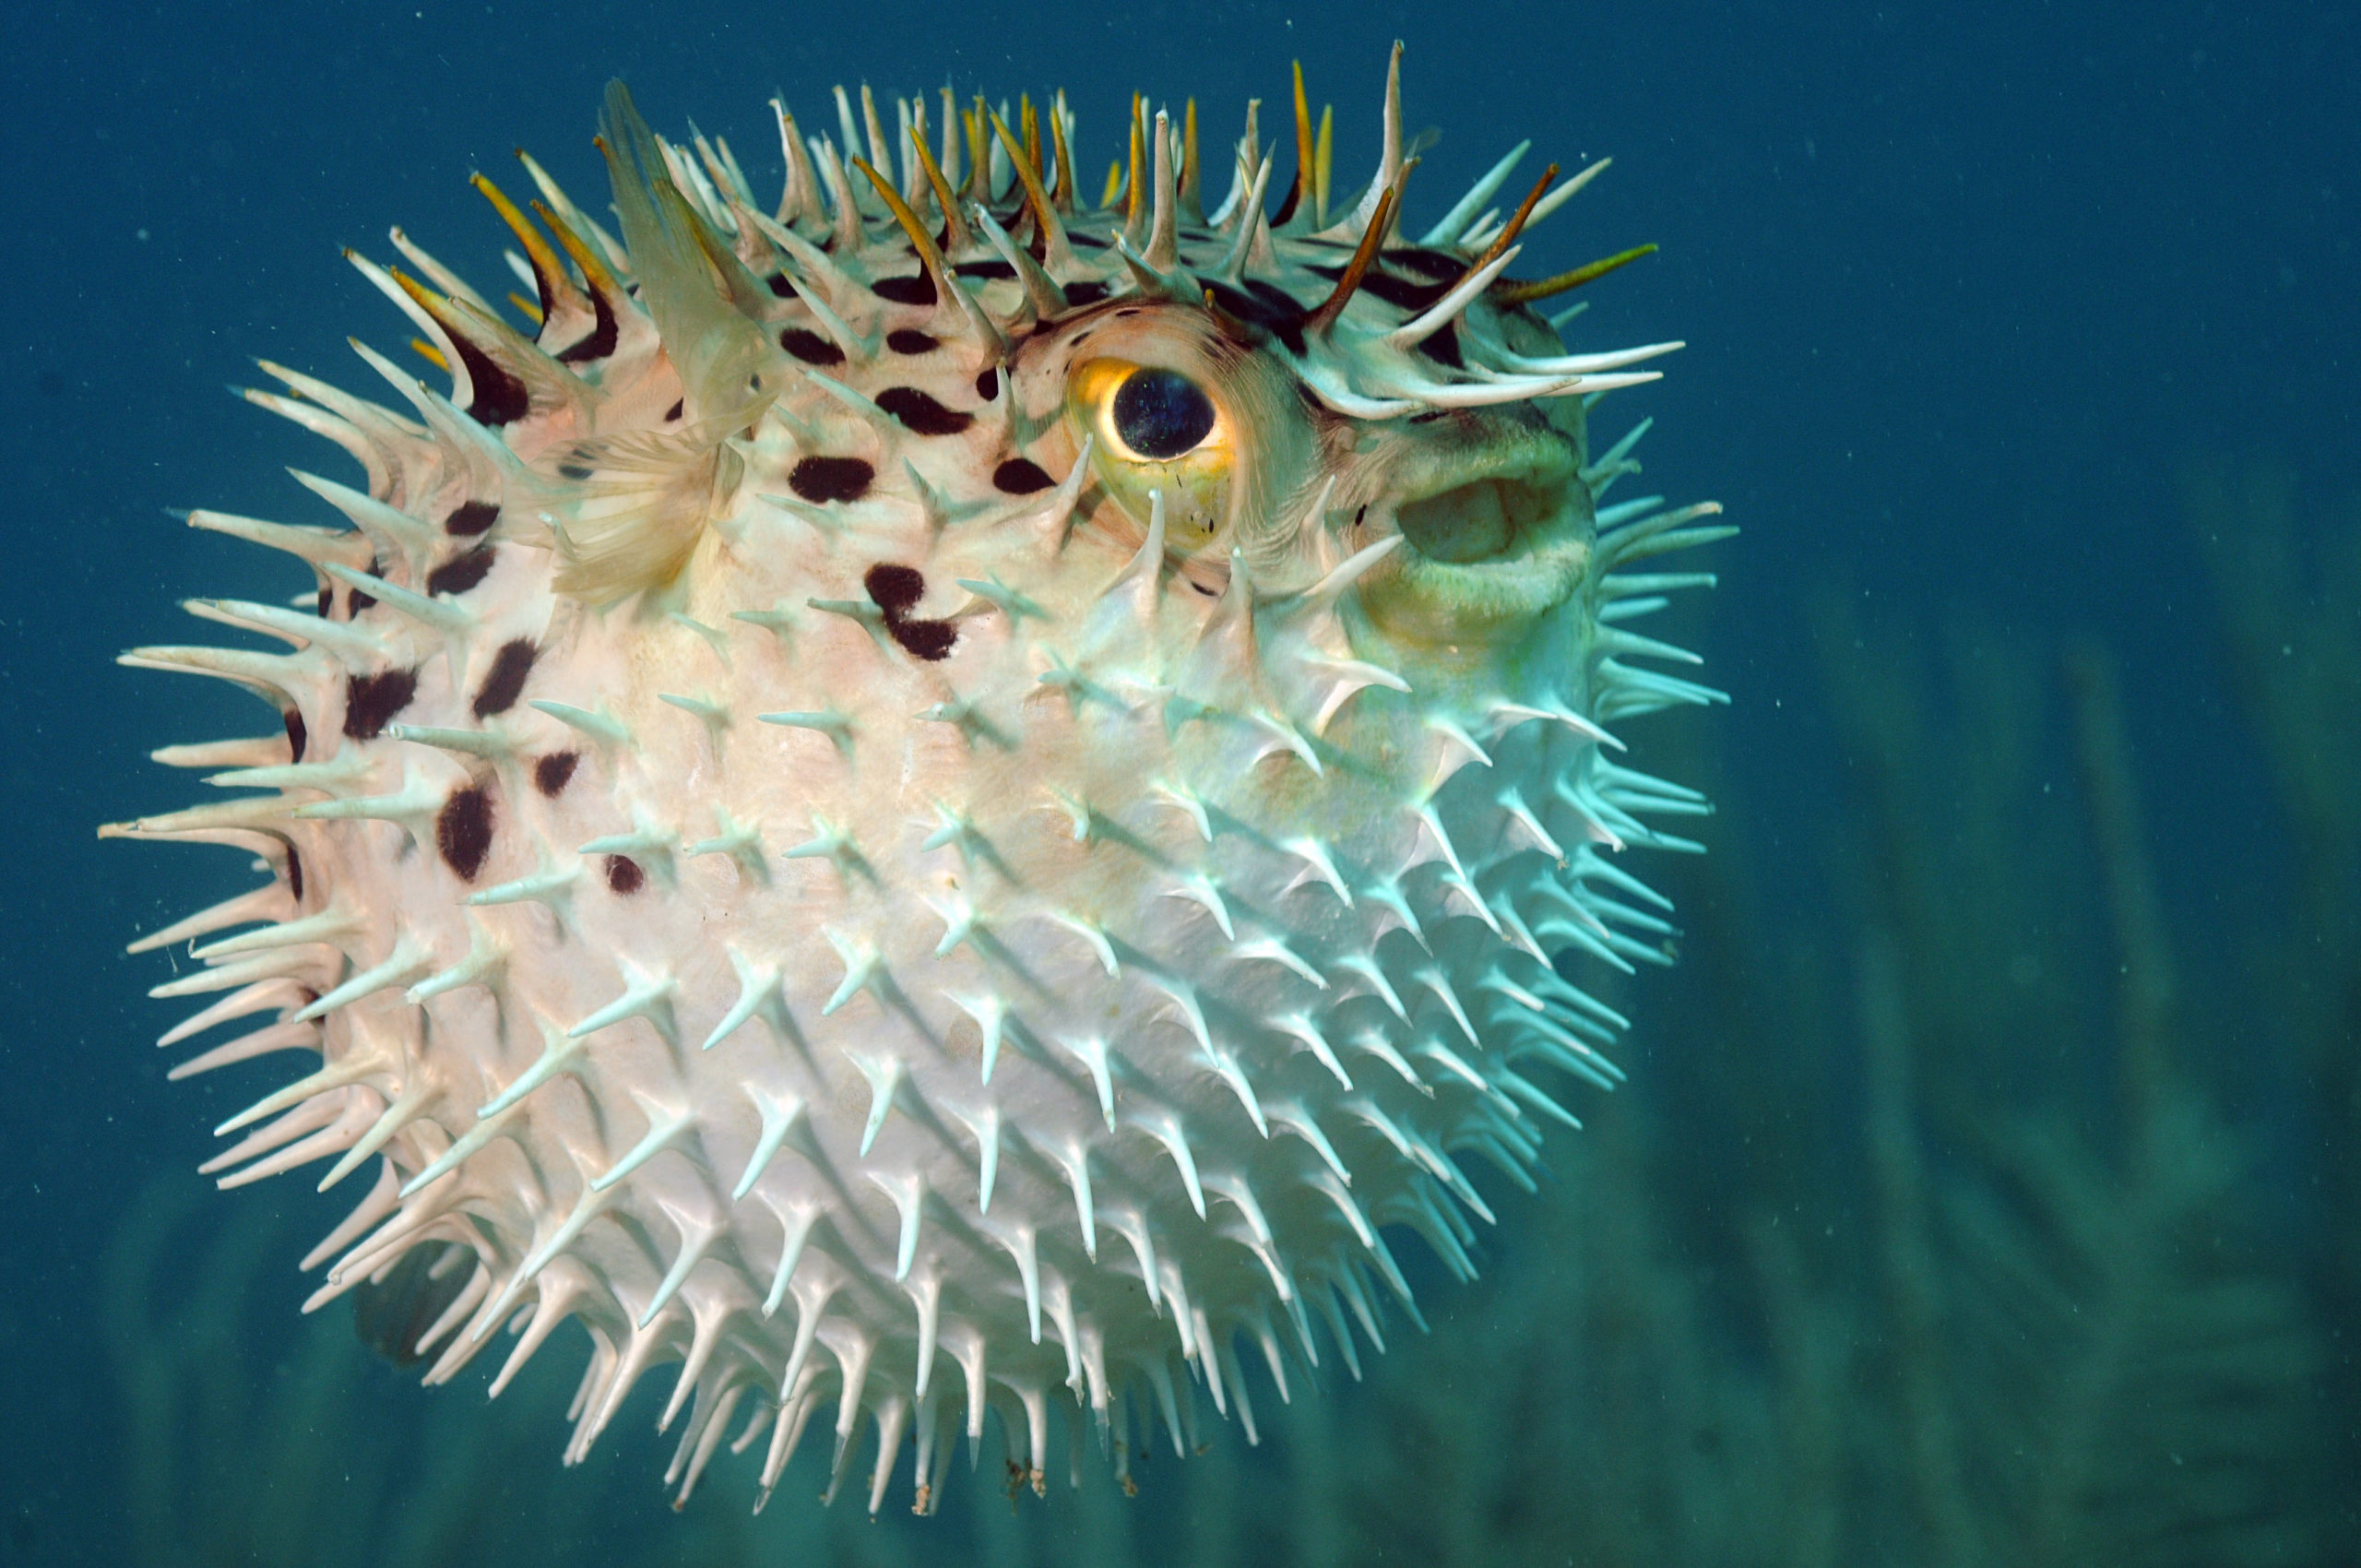 Kein Vorwurf aber an den Kugelfisch: Er gibt sich redlich Mühe, nicht verschluckt zu werden. | FtLaud, Shutterstock